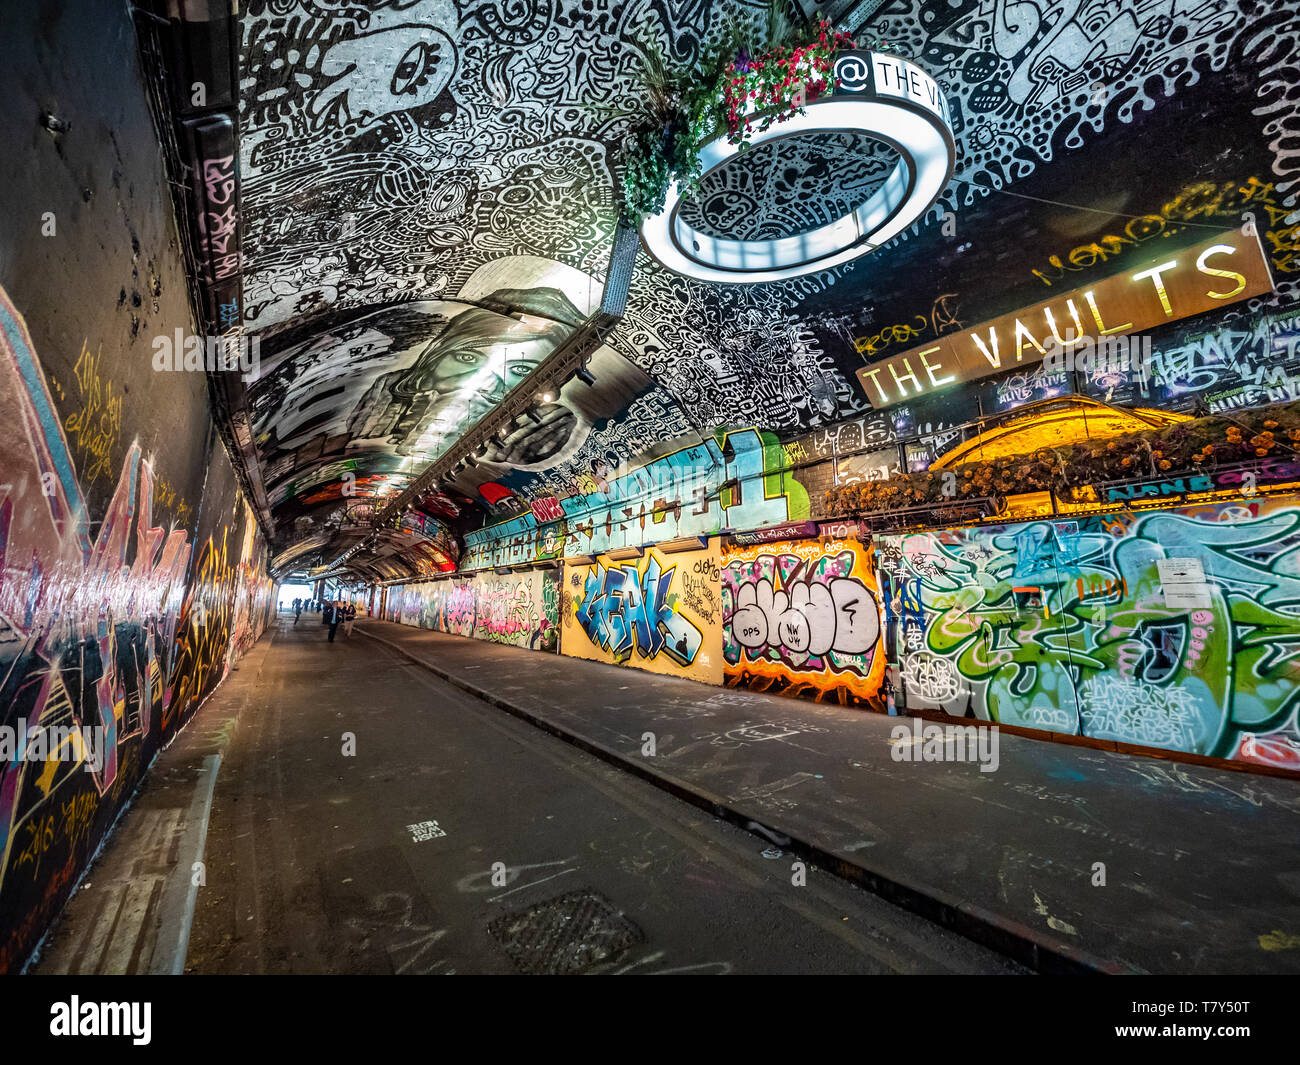 El túnel ( Leake Banksy, St o túnel Leake Street Arcos ) Graffiti legal local en la estación de trenes de Waterloo, Londres, Reino Unido. Foto de stock